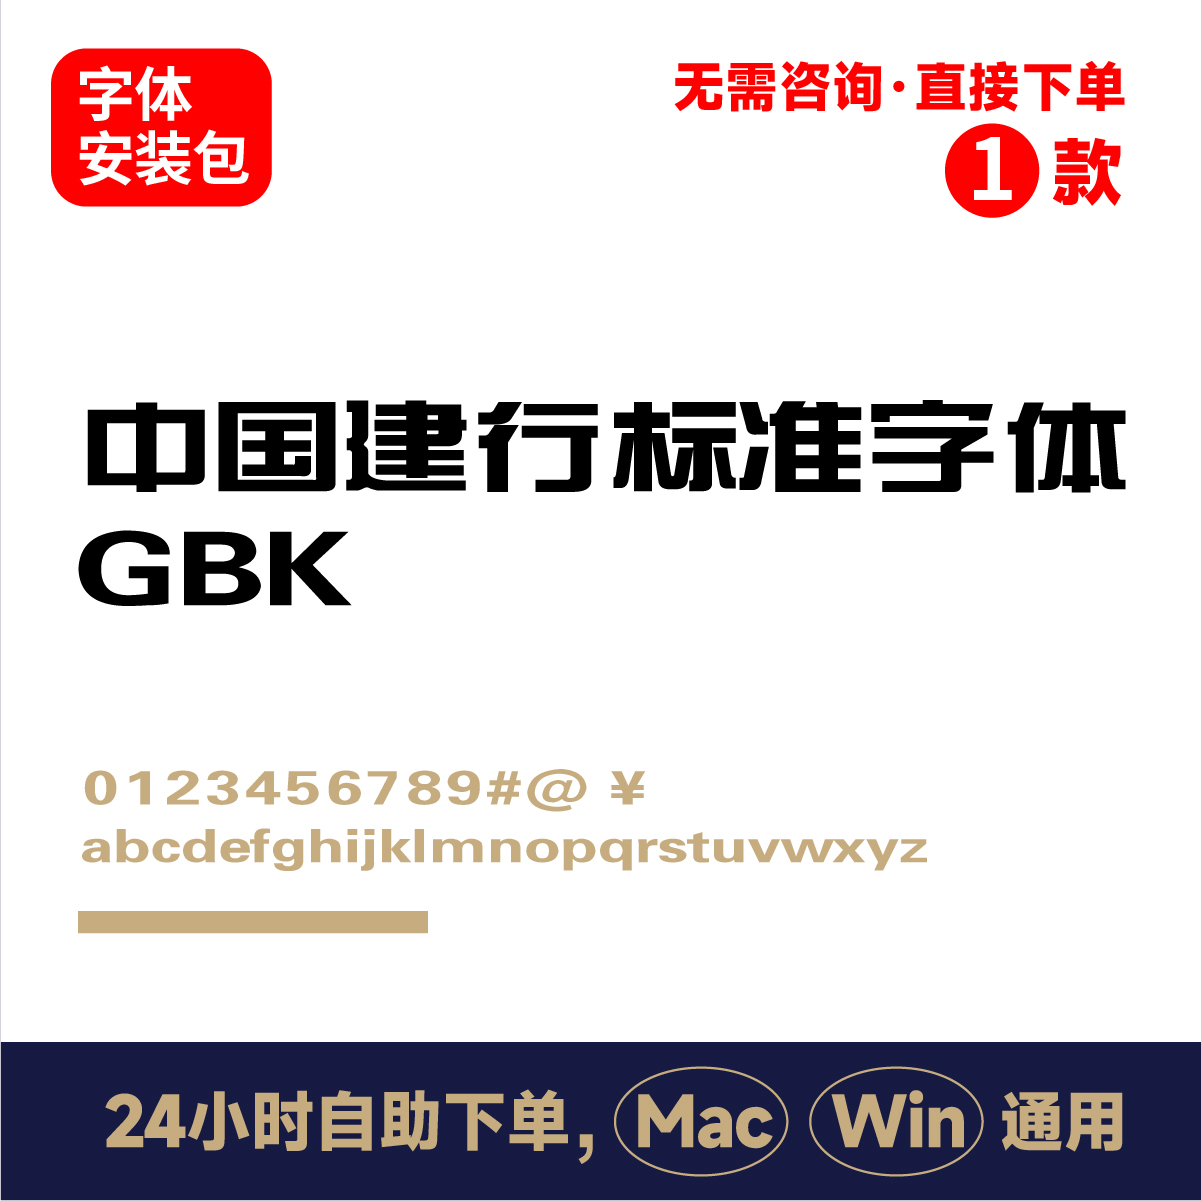 中国建行标准字GBK 银行字体 标准字体 电脑字体ps/ai/cdr字体151